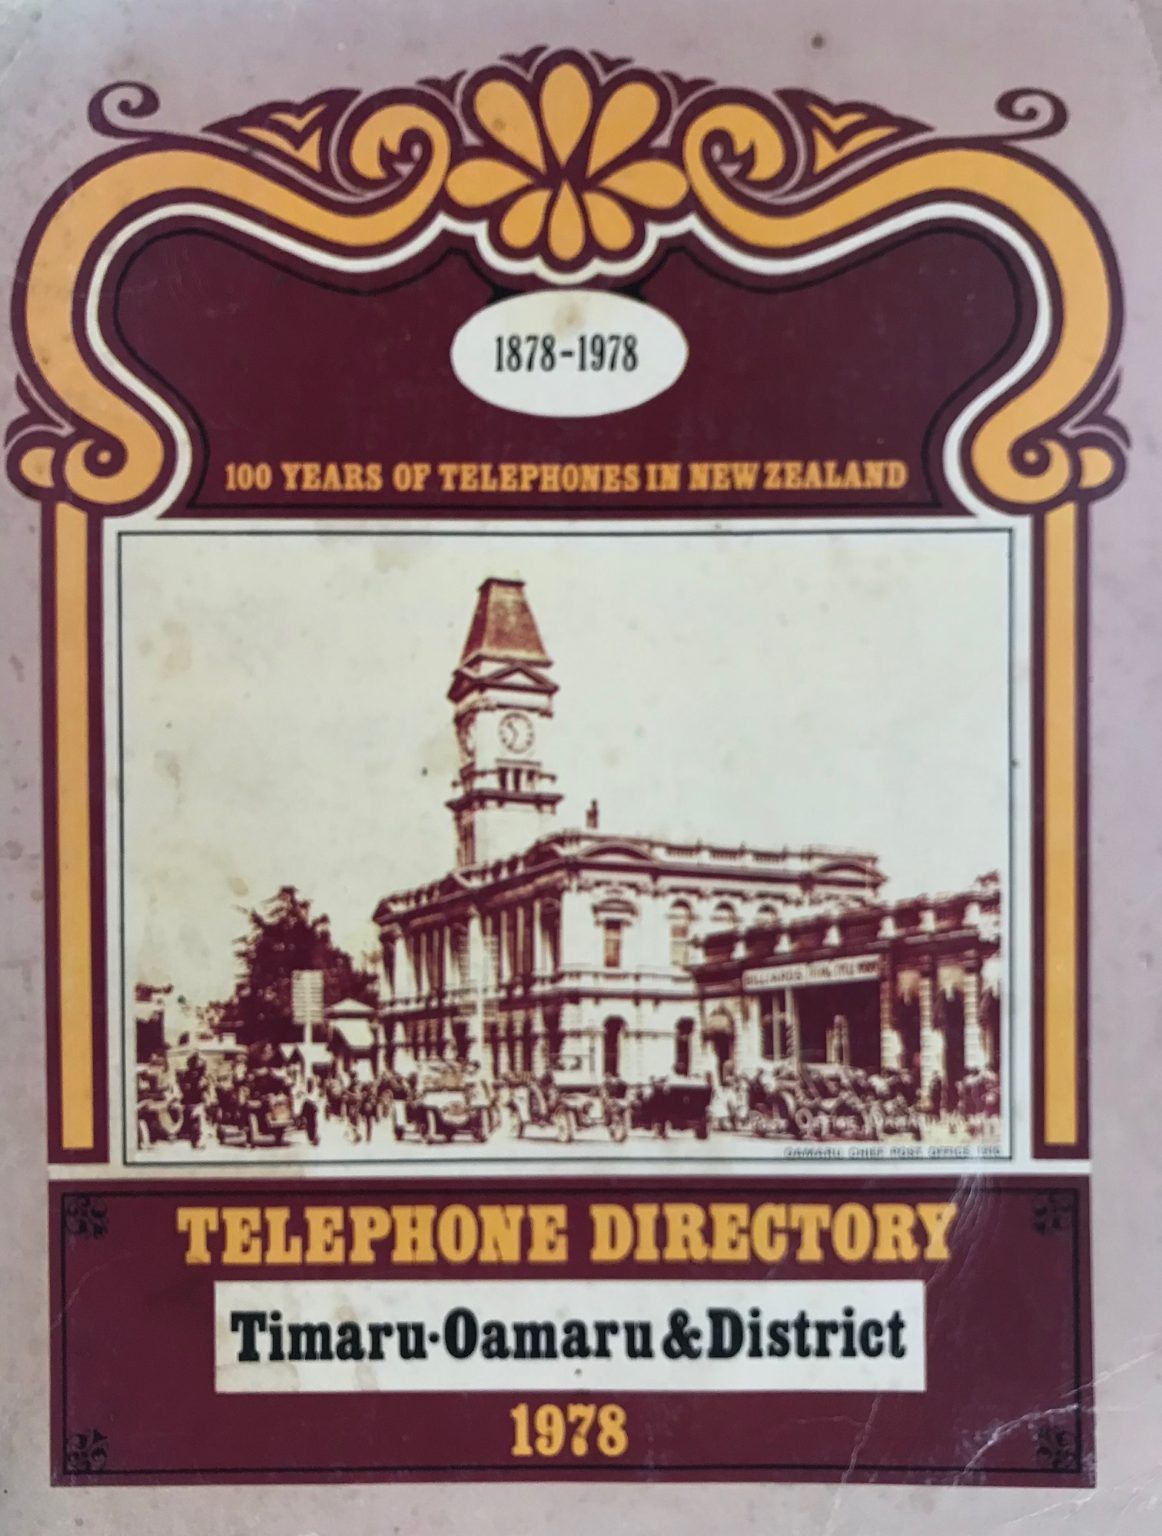 TELEPHONE DIRECTORY: Timaru-Oamaru & District 1978